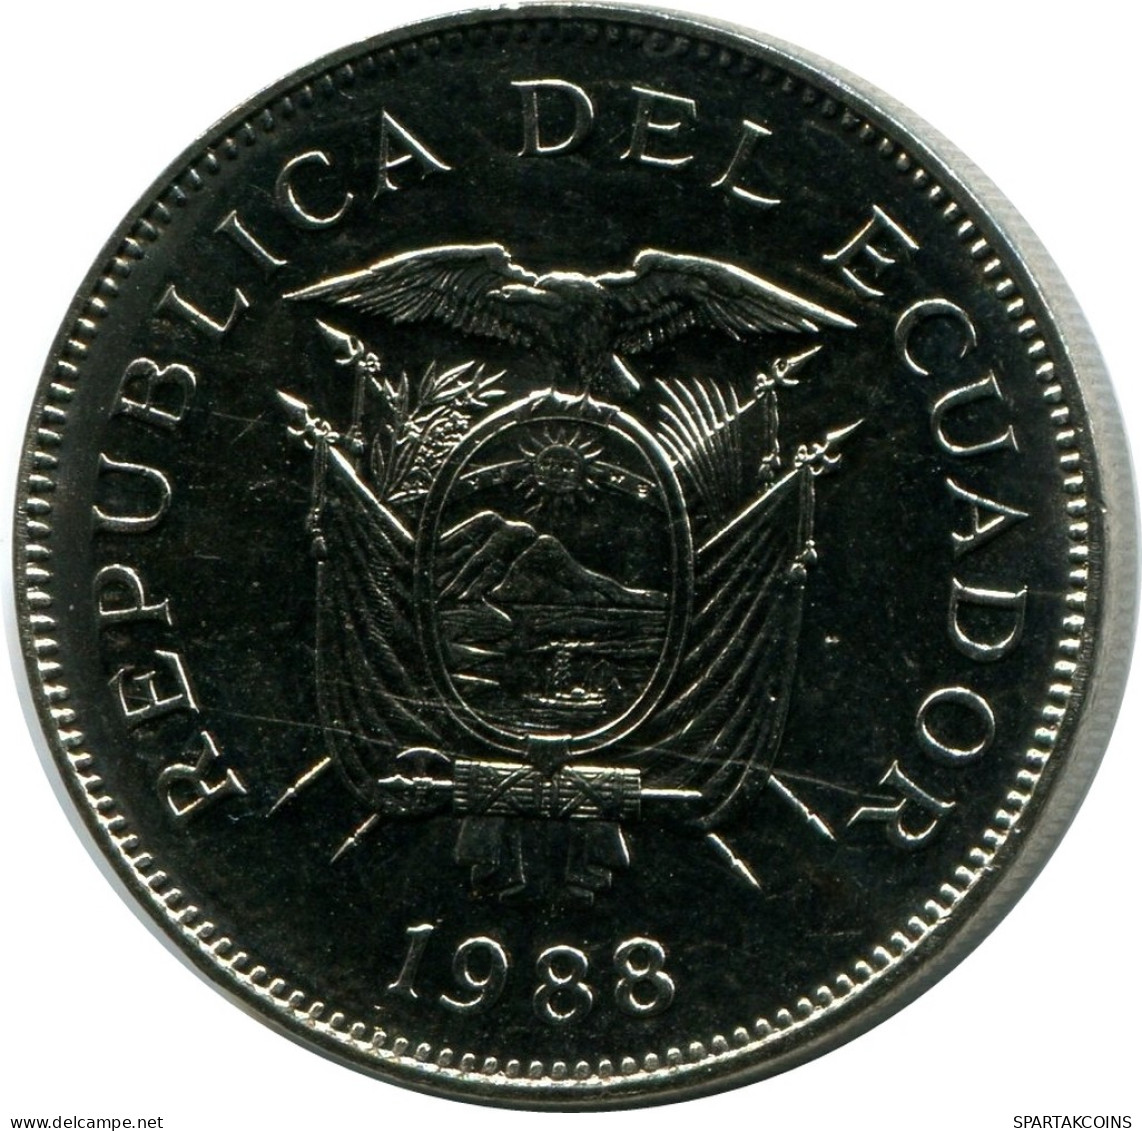 50 SUCRE 1991 ECUADOR UNC Coin #M10153.U - Equateur